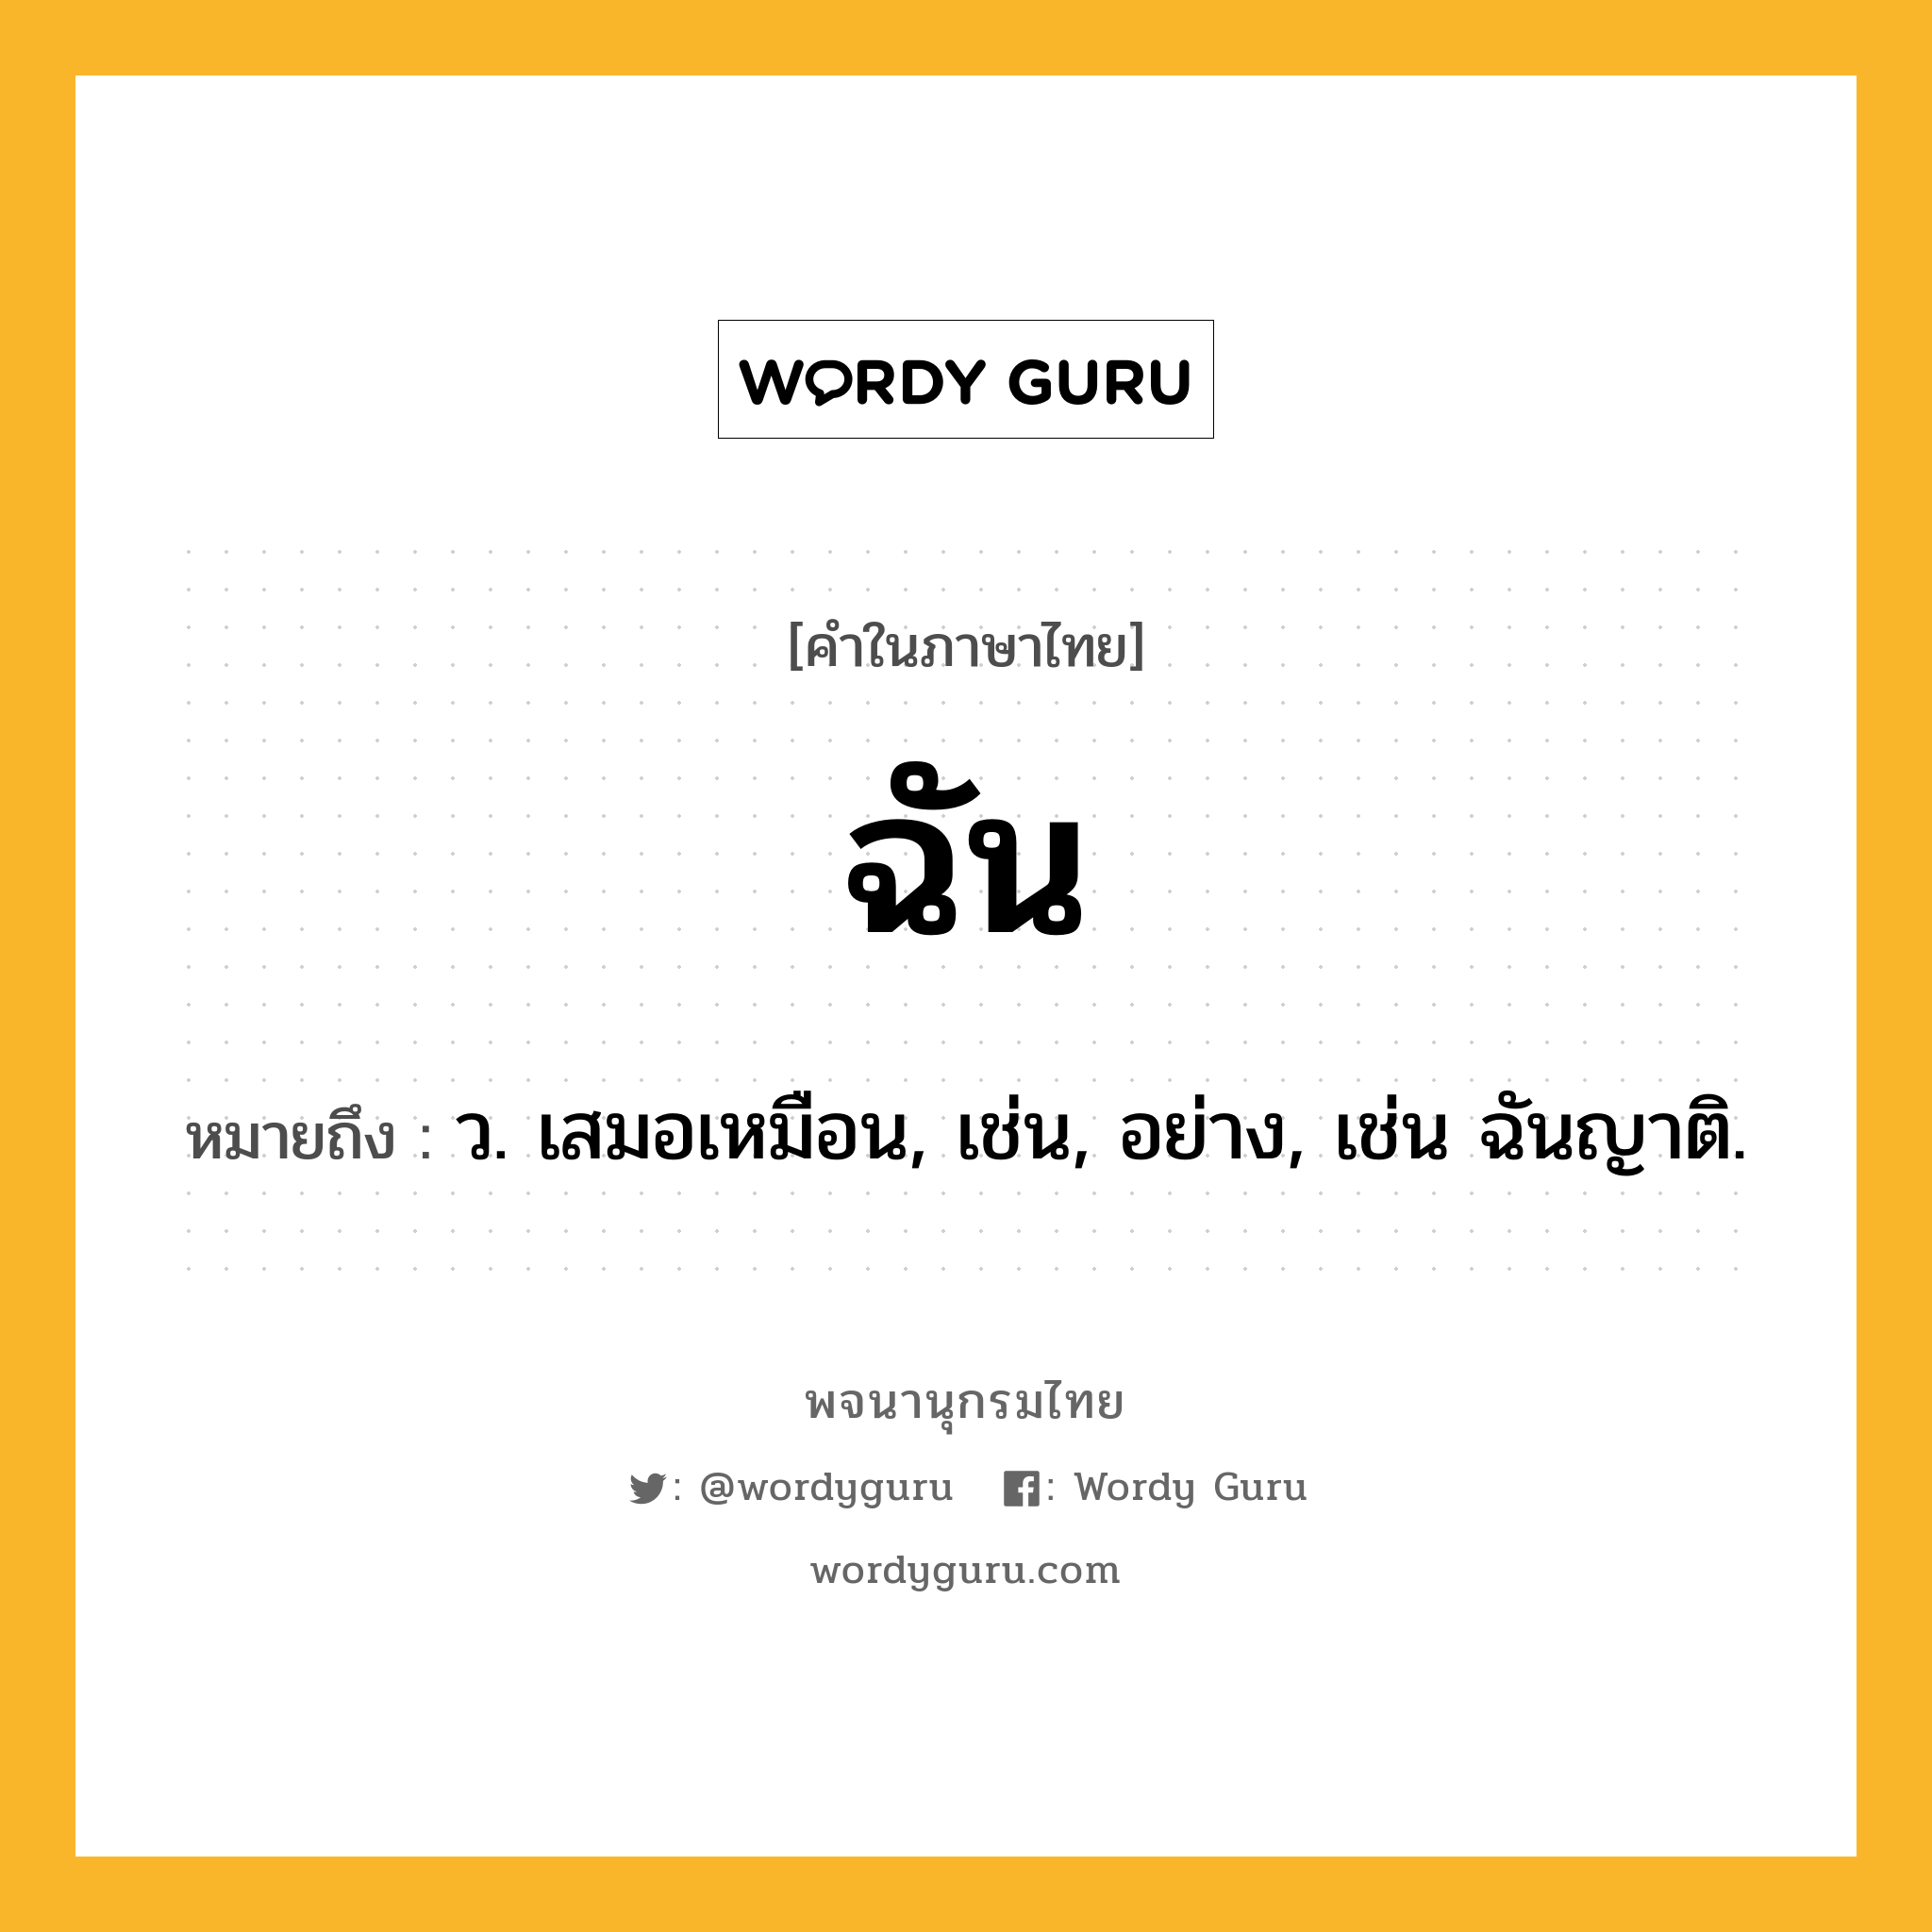 ฉัน ความหมาย หมายถึงอะไร?, คำในภาษาไทย ฉัน หมายถึง ว. เสมอเหมือน, เช่น, อย่าง, เช่น ฉันญาติ.